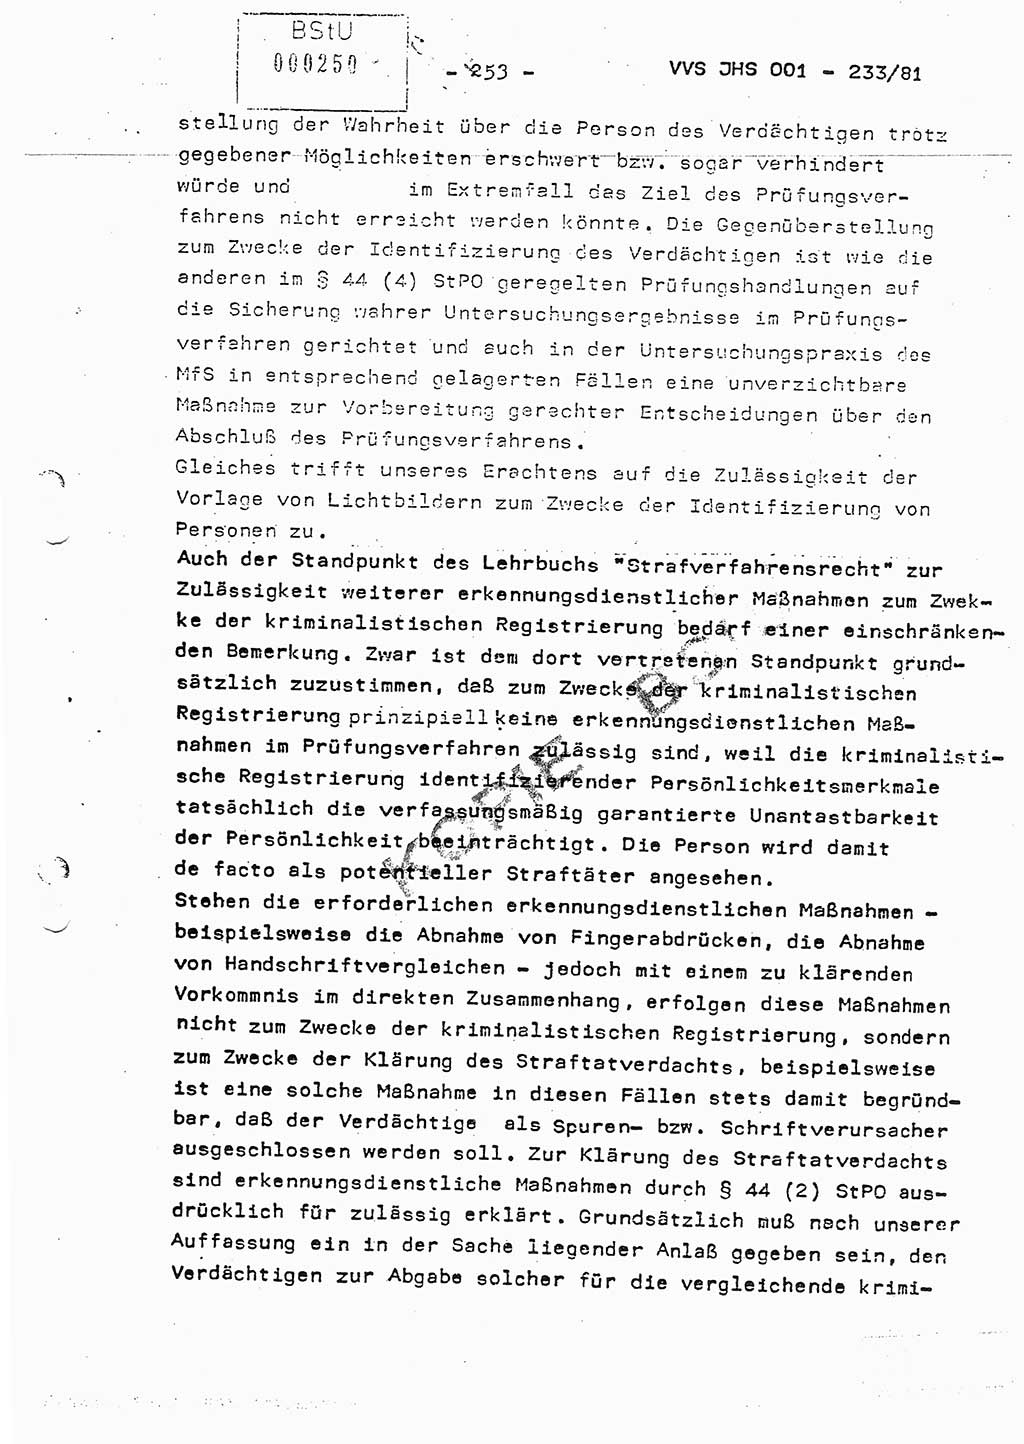 Dissertation Oberstleutnant Horst Zank (JHS), Oberstleutnant Dr. Karl-Heinz Knoblauch (JHS), Oberstleutnant Gustav-Adolf Kowalewski (HA Ⅸ), Oberstleutnant Wolfgang Plötner (HA Ⅸ), Ministerium für Staatssicherheit (MfS) [Deutsche Demokratische Republik (DDR)], Juristische Hochschule (JHS), Vertrauliche Verschlußsache (VVS) o001-233/81, Potsdam 1981, Blatt 253 (Diss. MfS DDR JHS VVS o001-233/81 1981, Bl. 253)